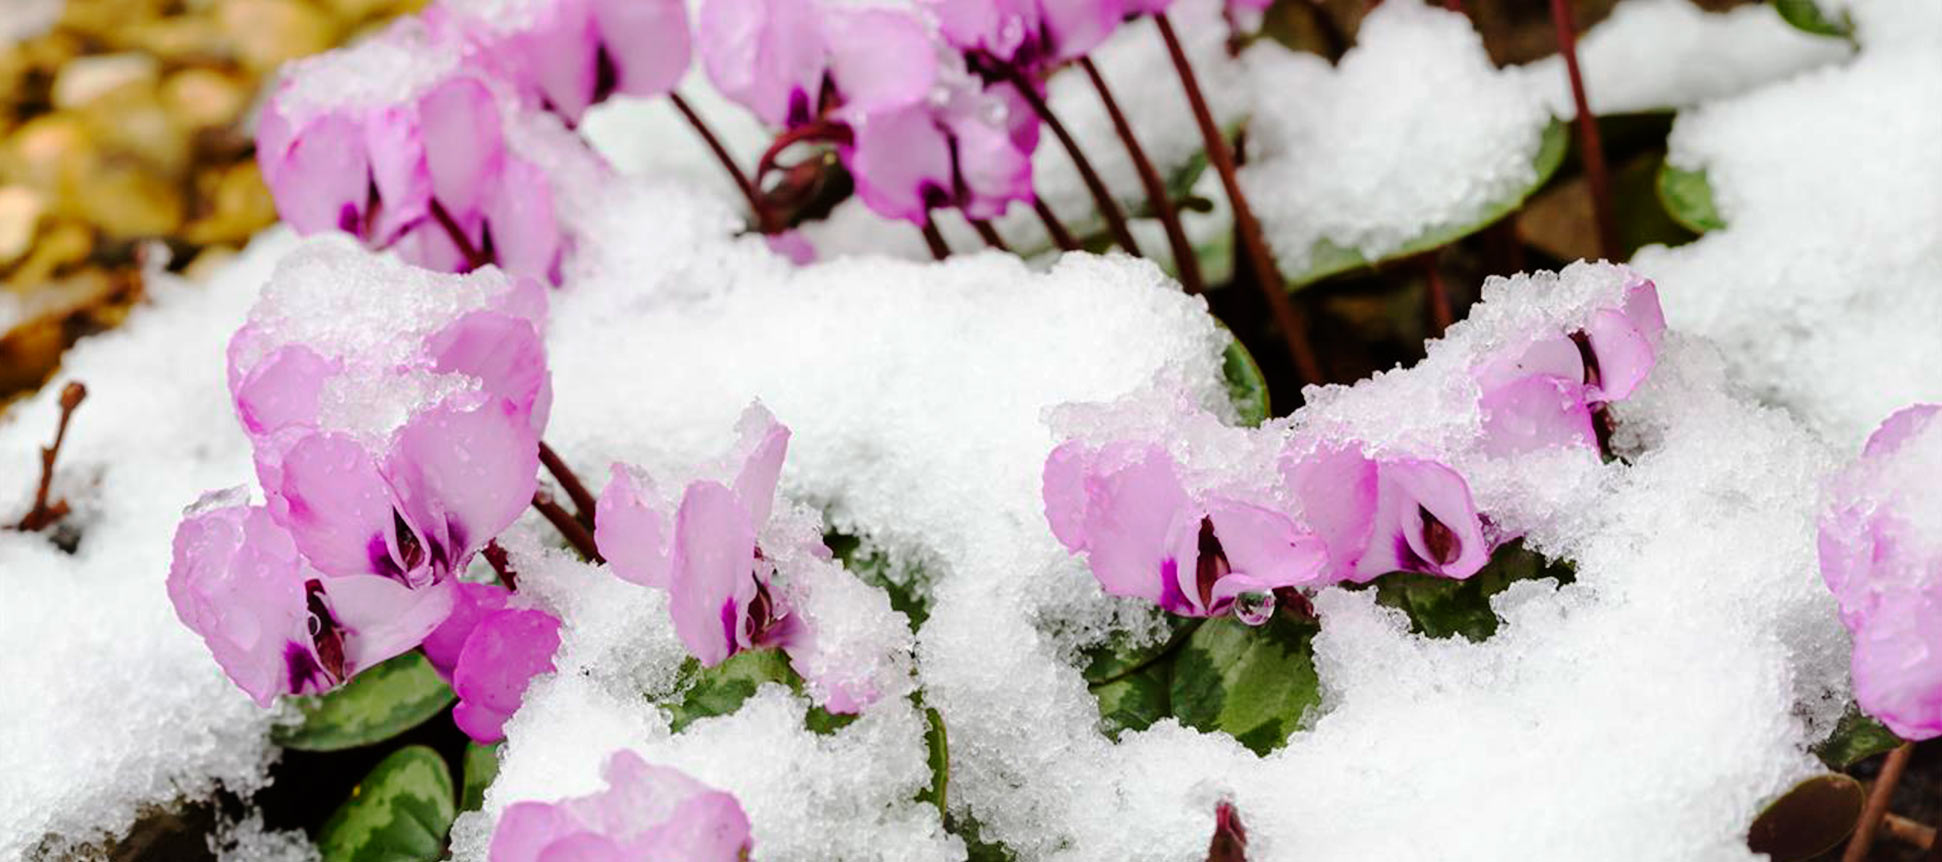 Cómo proteger las plantas y el huerto de nevadas